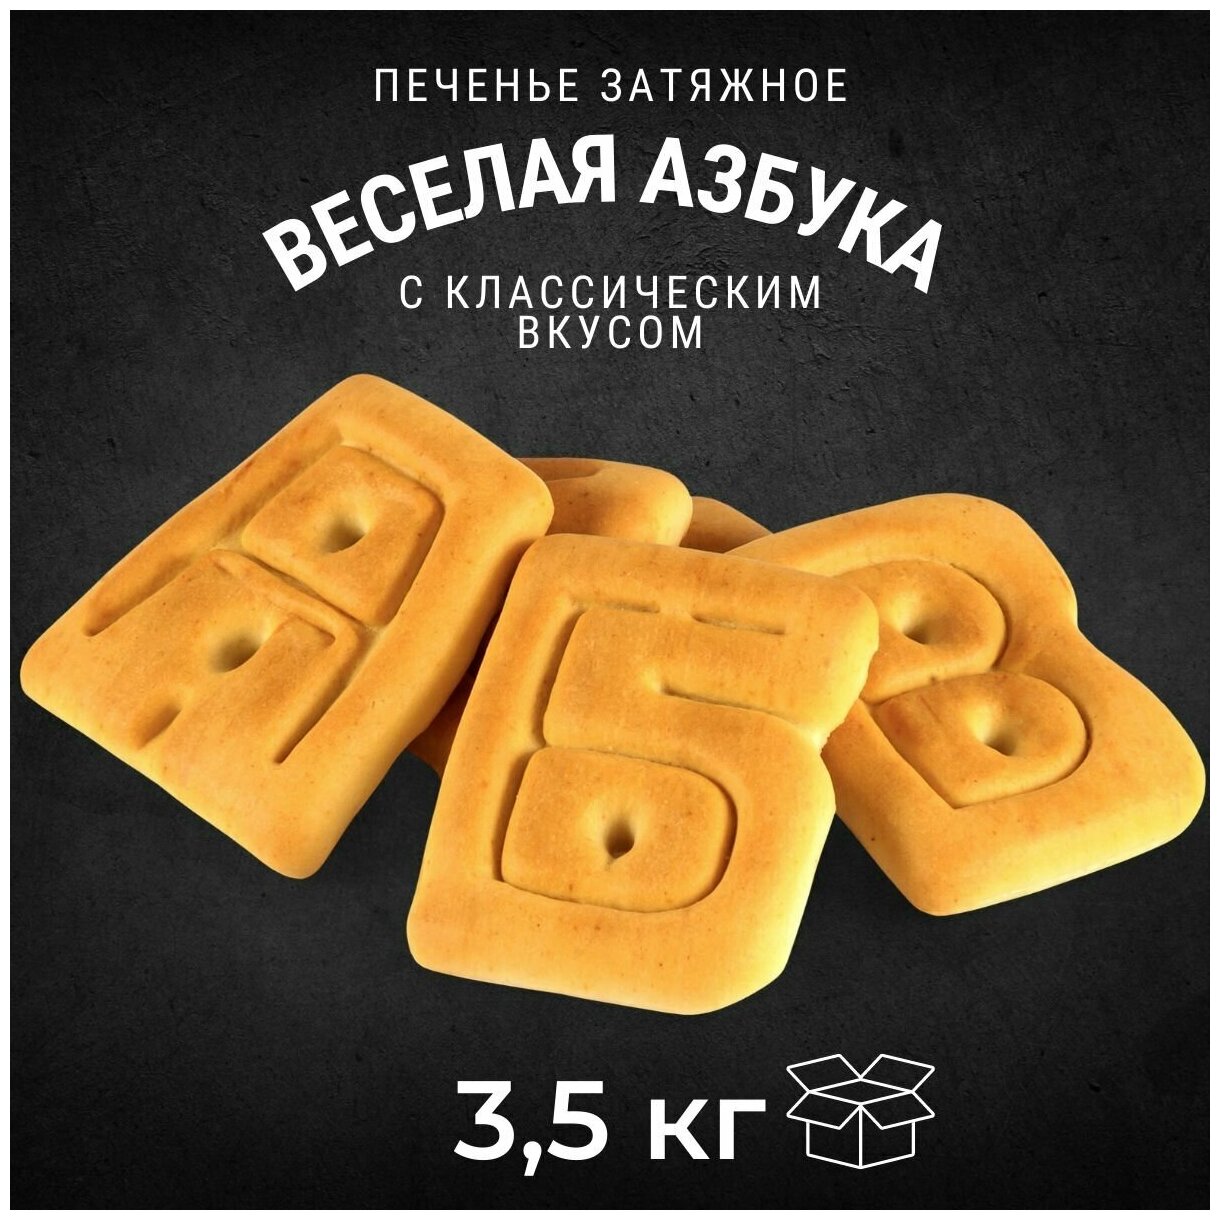 Печенье затяжное веселая азбука 3,5 кг , Черногорский